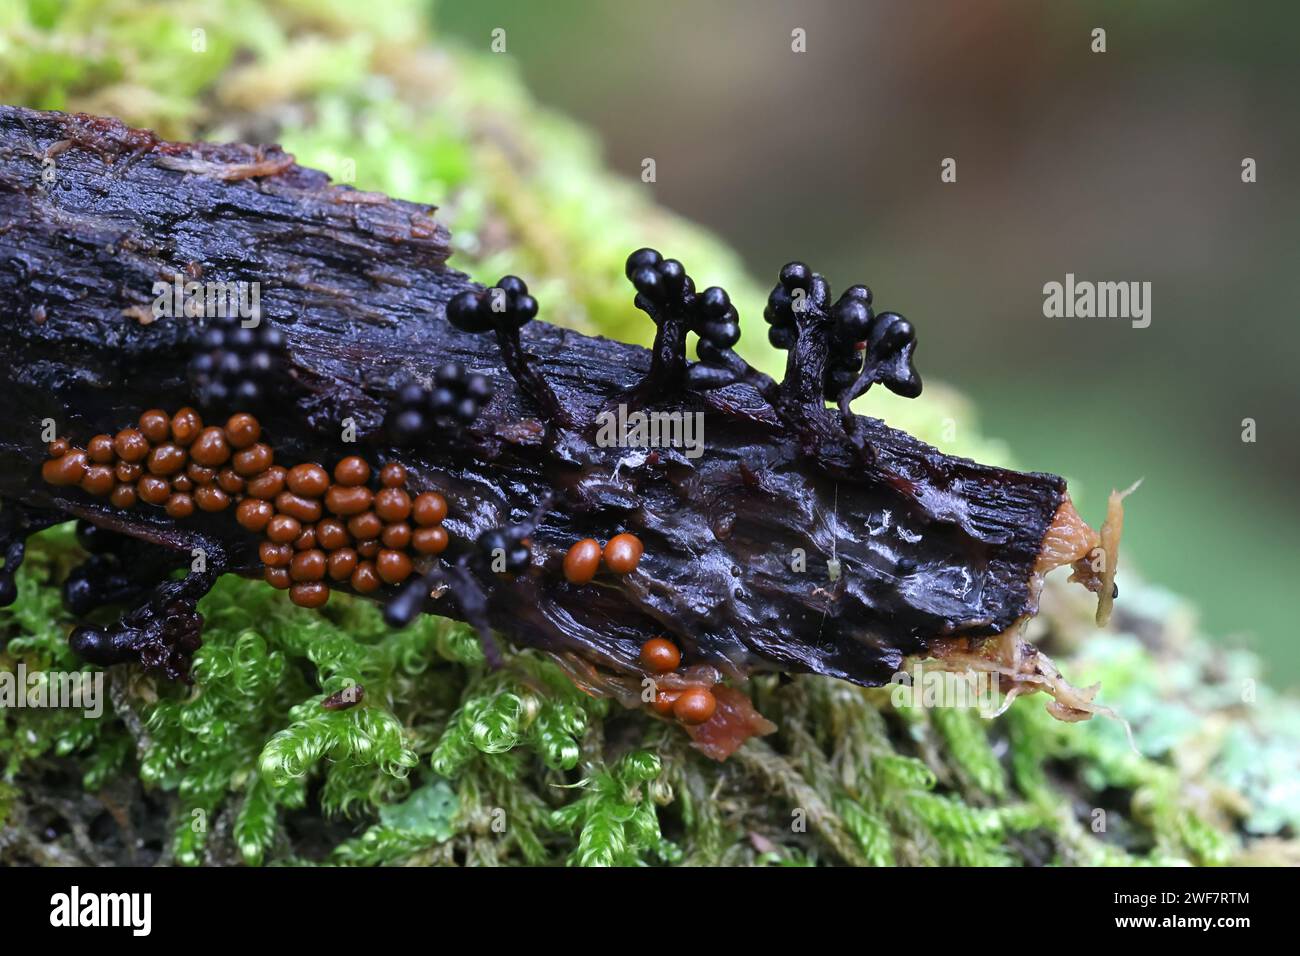 Metatrichia floriformis, known as Wasp nest slime mold, clustered black sporangia Stock Photo